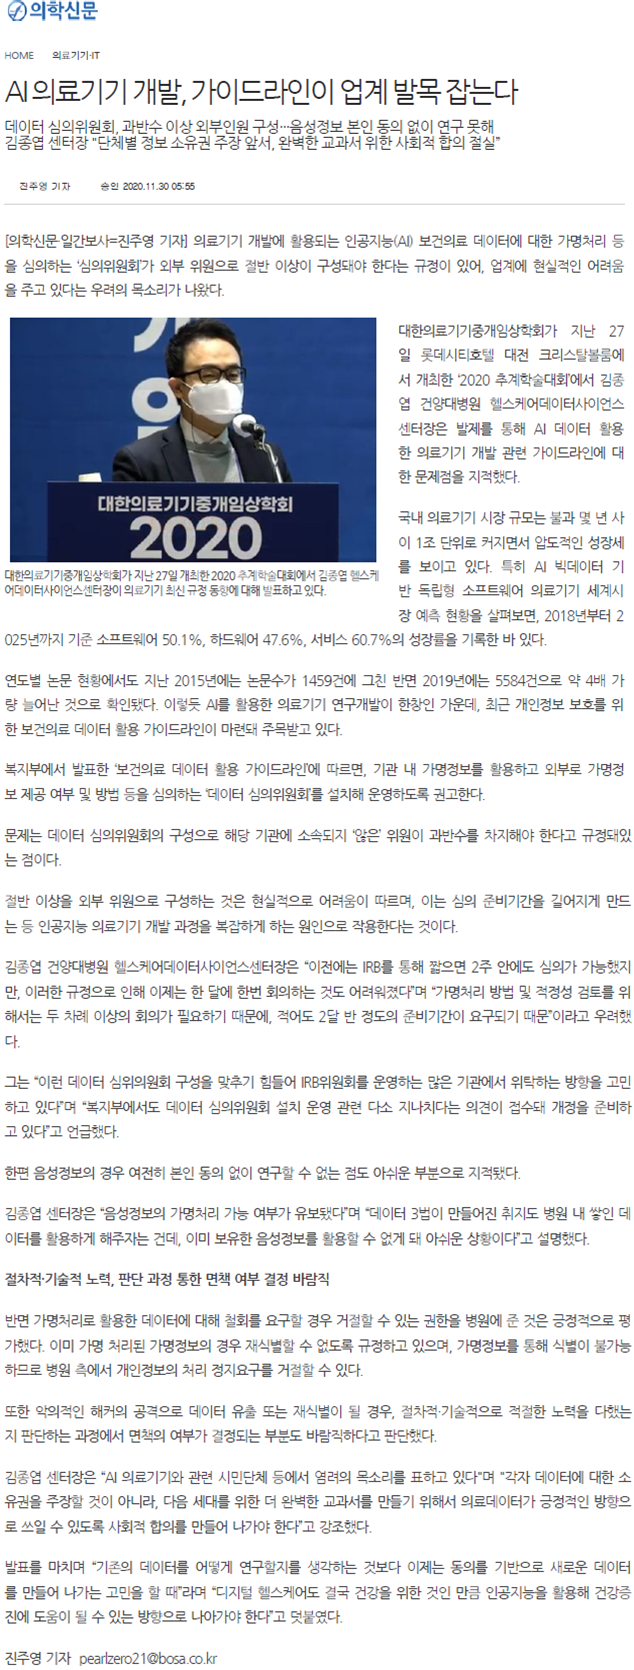 의학신문_2020 중개임상학회.png